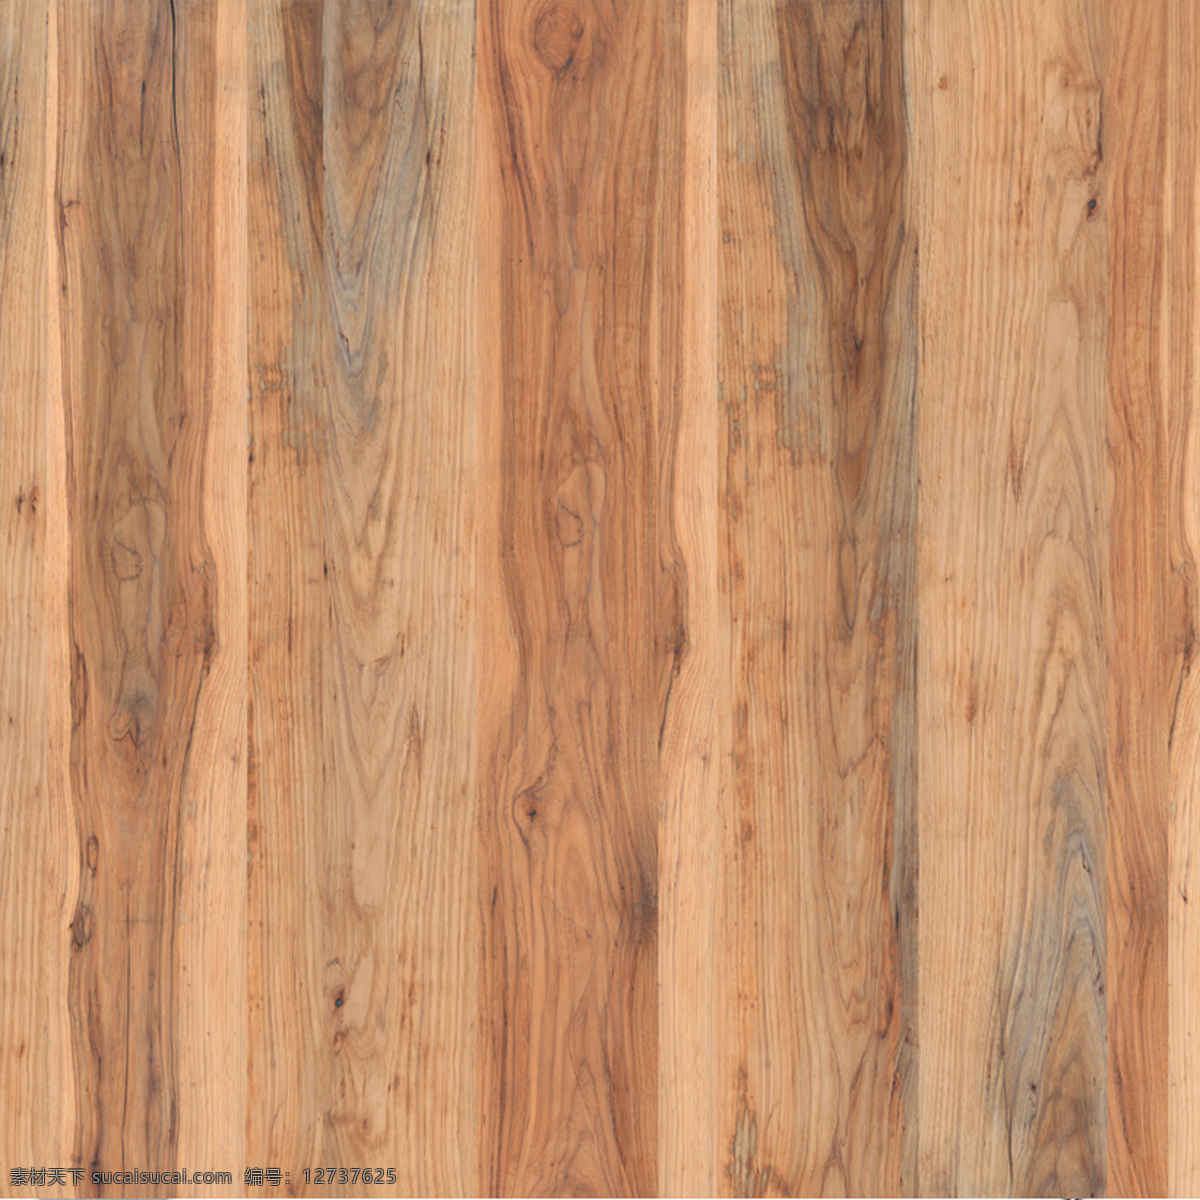 木地板花纹 木地板纹理 木纹 木头纹理 木材 板材 复合板